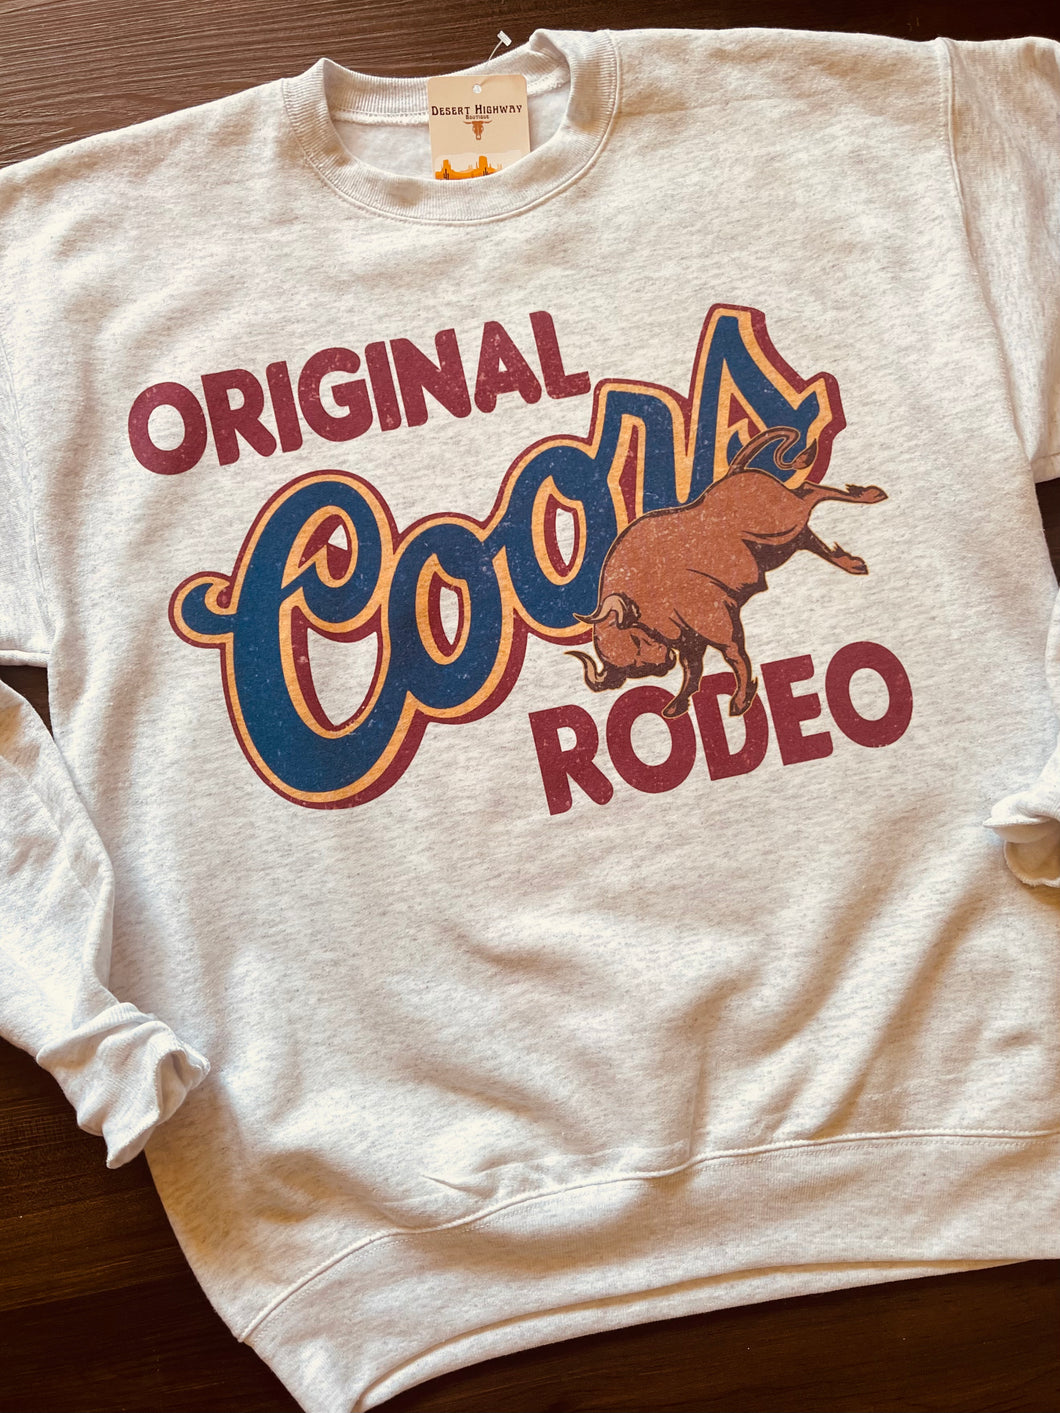 Original Coors Rodeo Crewneck